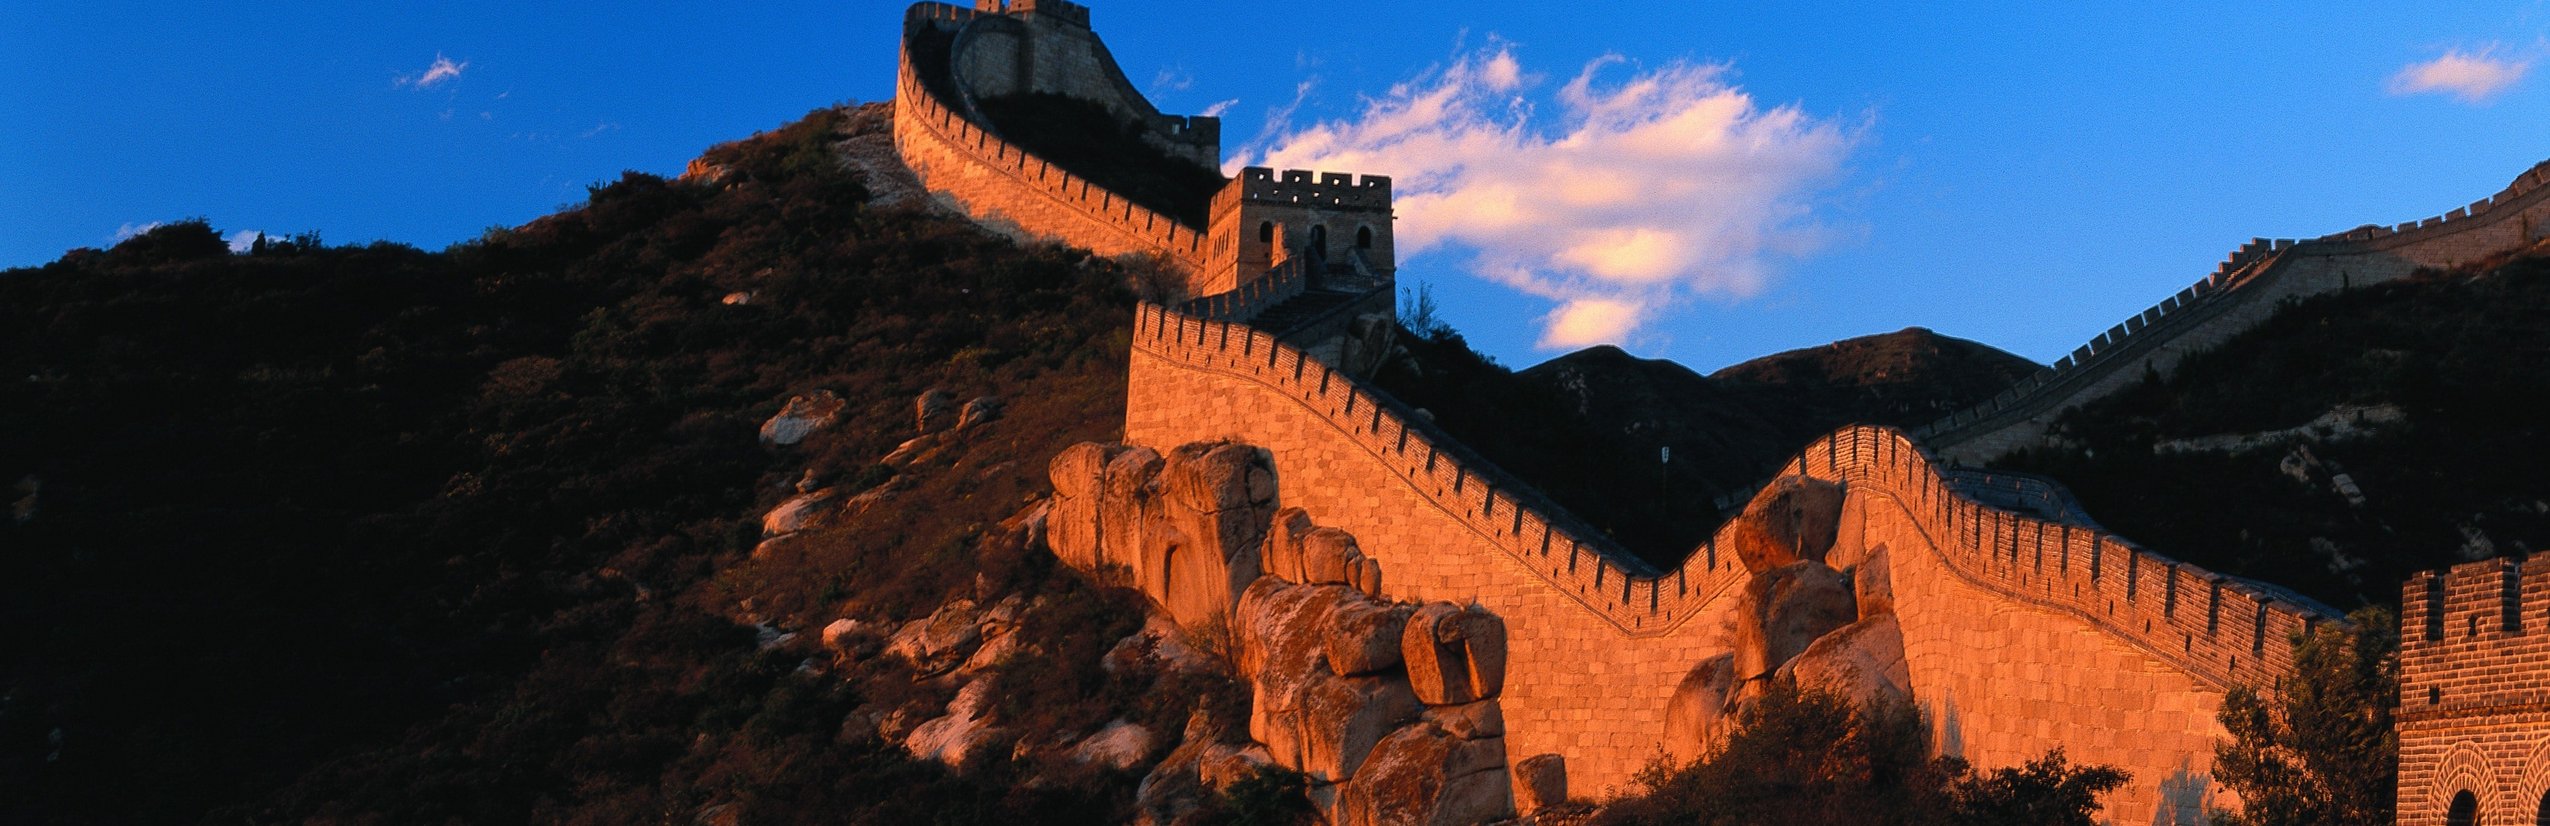 Familienreisen Asien - Chinesische Mauer bei Sonnenuntergang